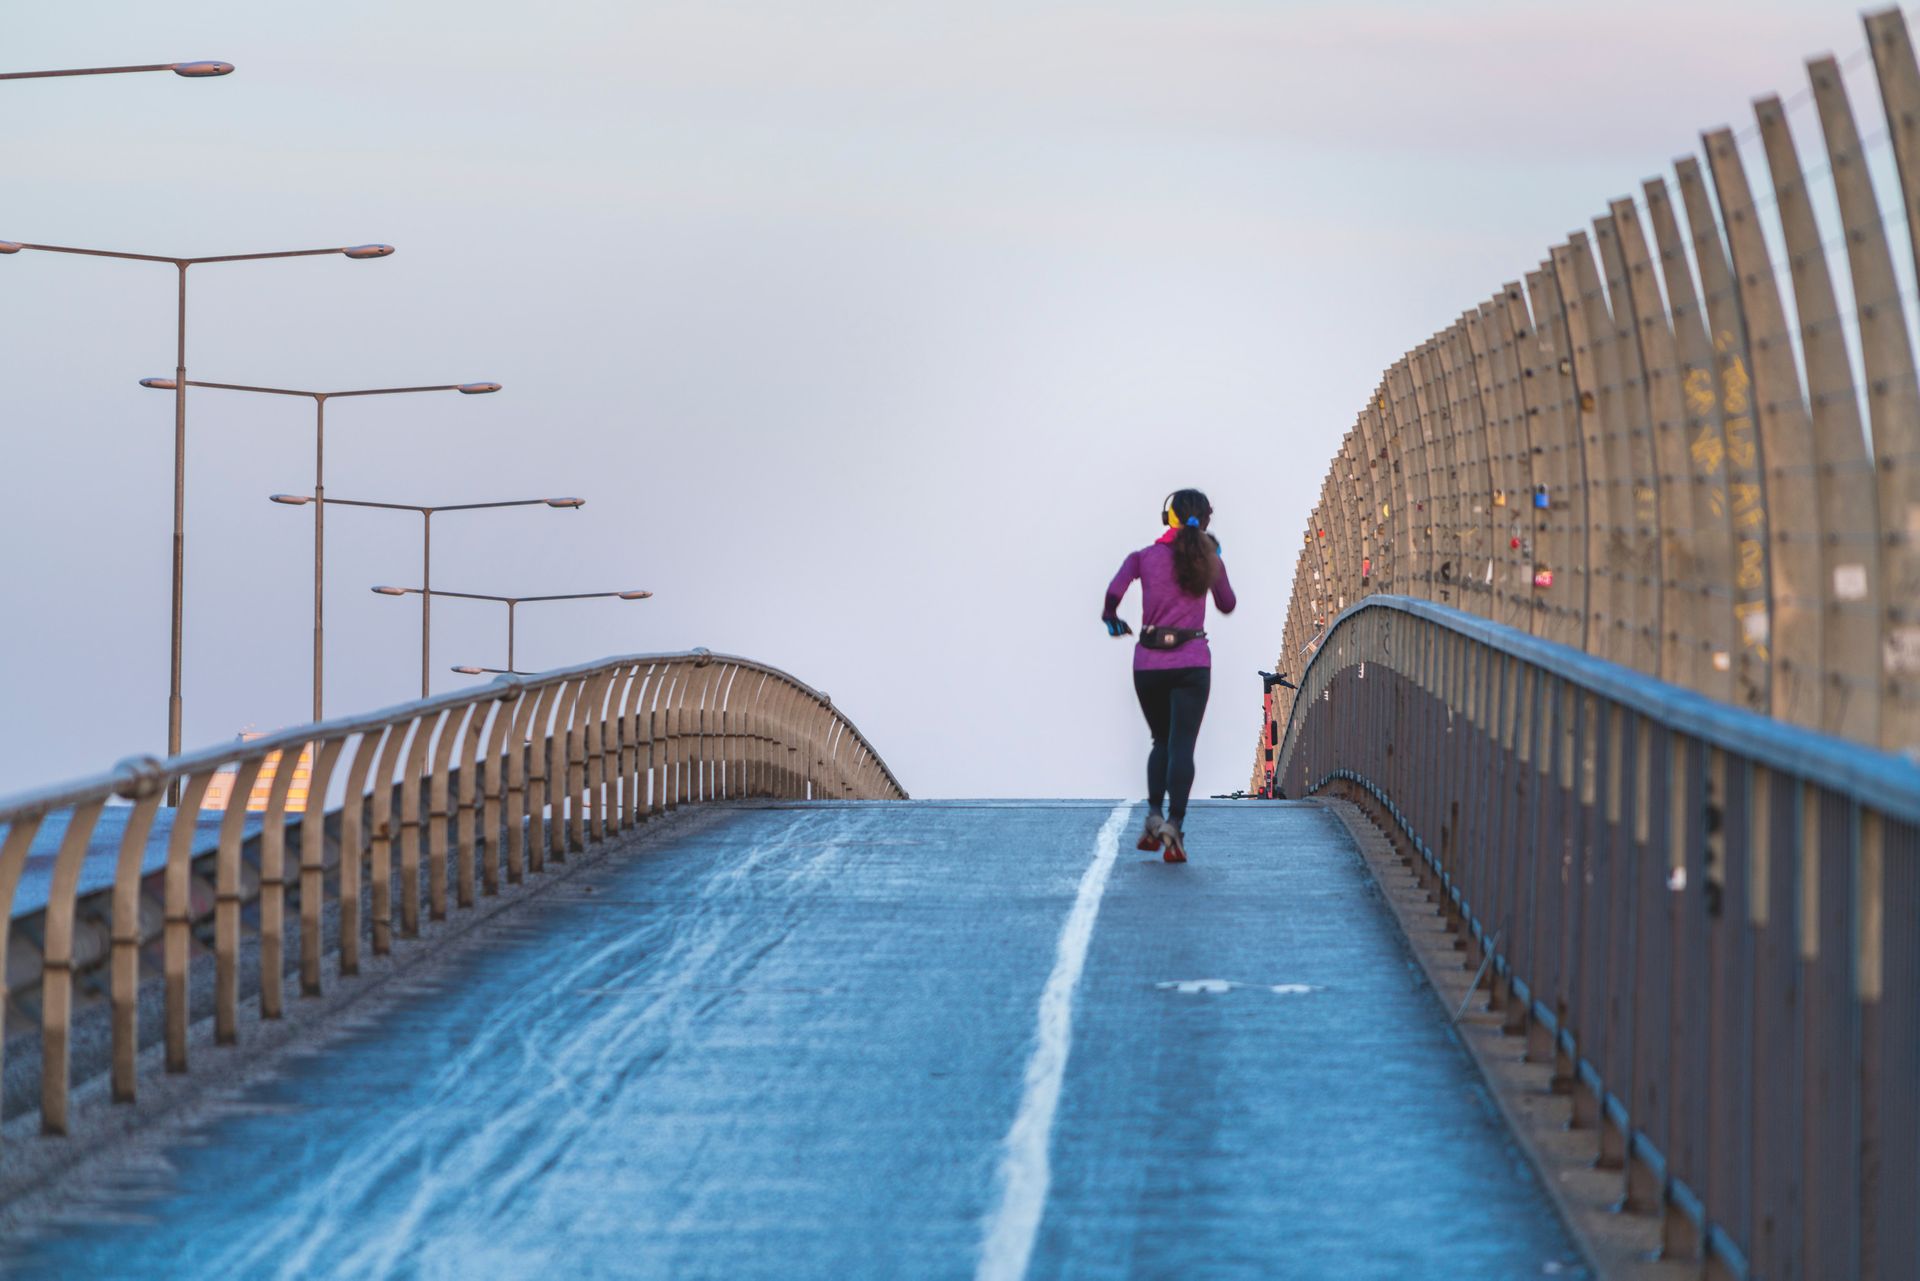 A woman jogs alone on a bridge.